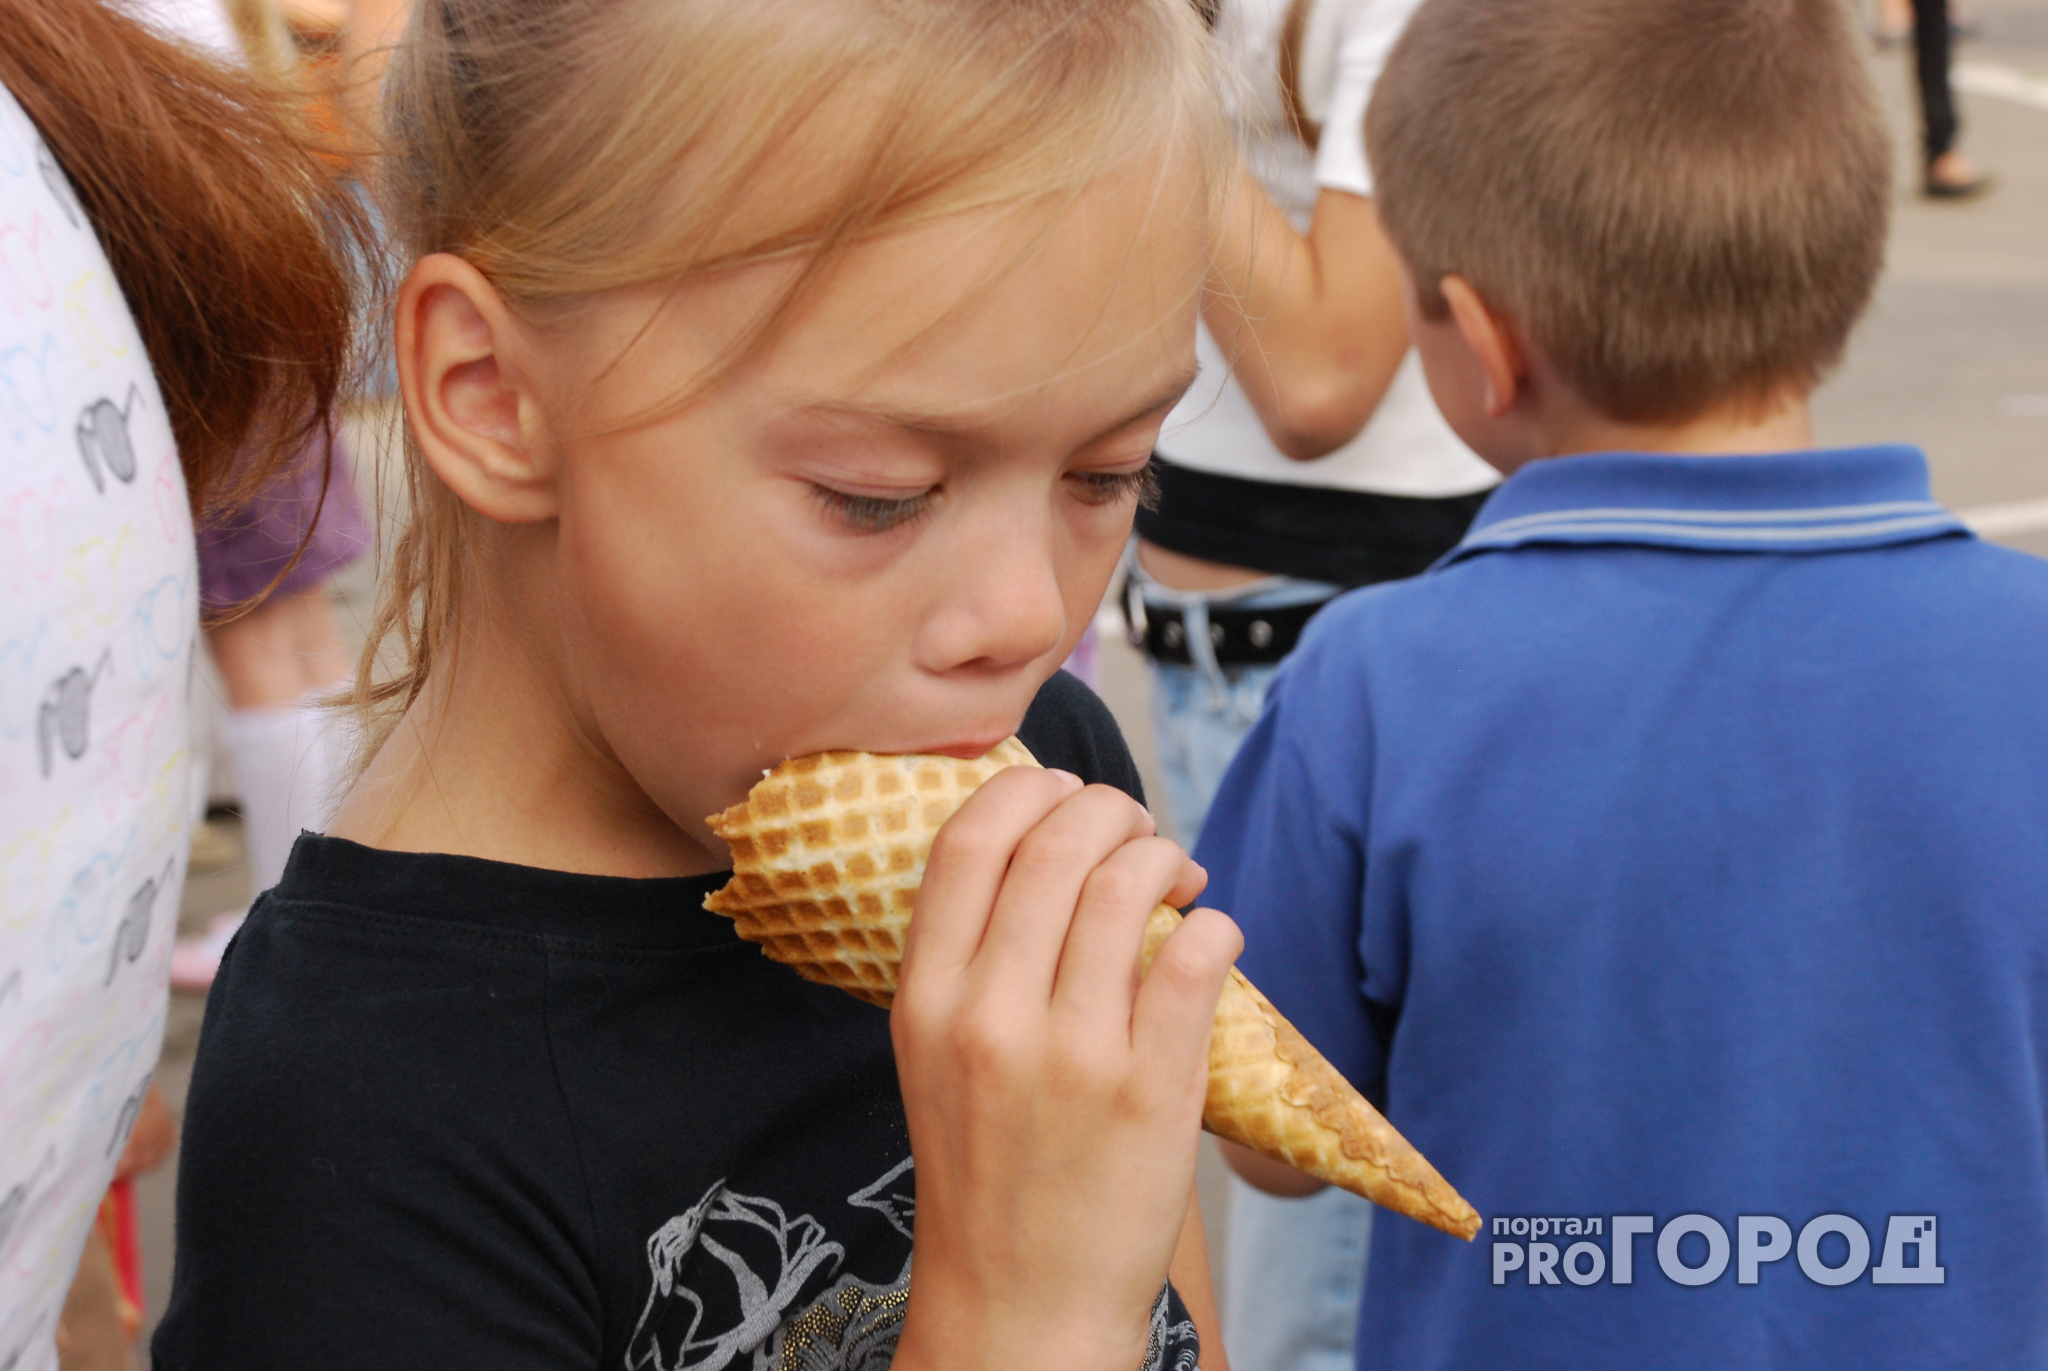 Афиша в Чебоксарах на выходные: фестиваль мороженого, детский праздник, ночной флешмоб